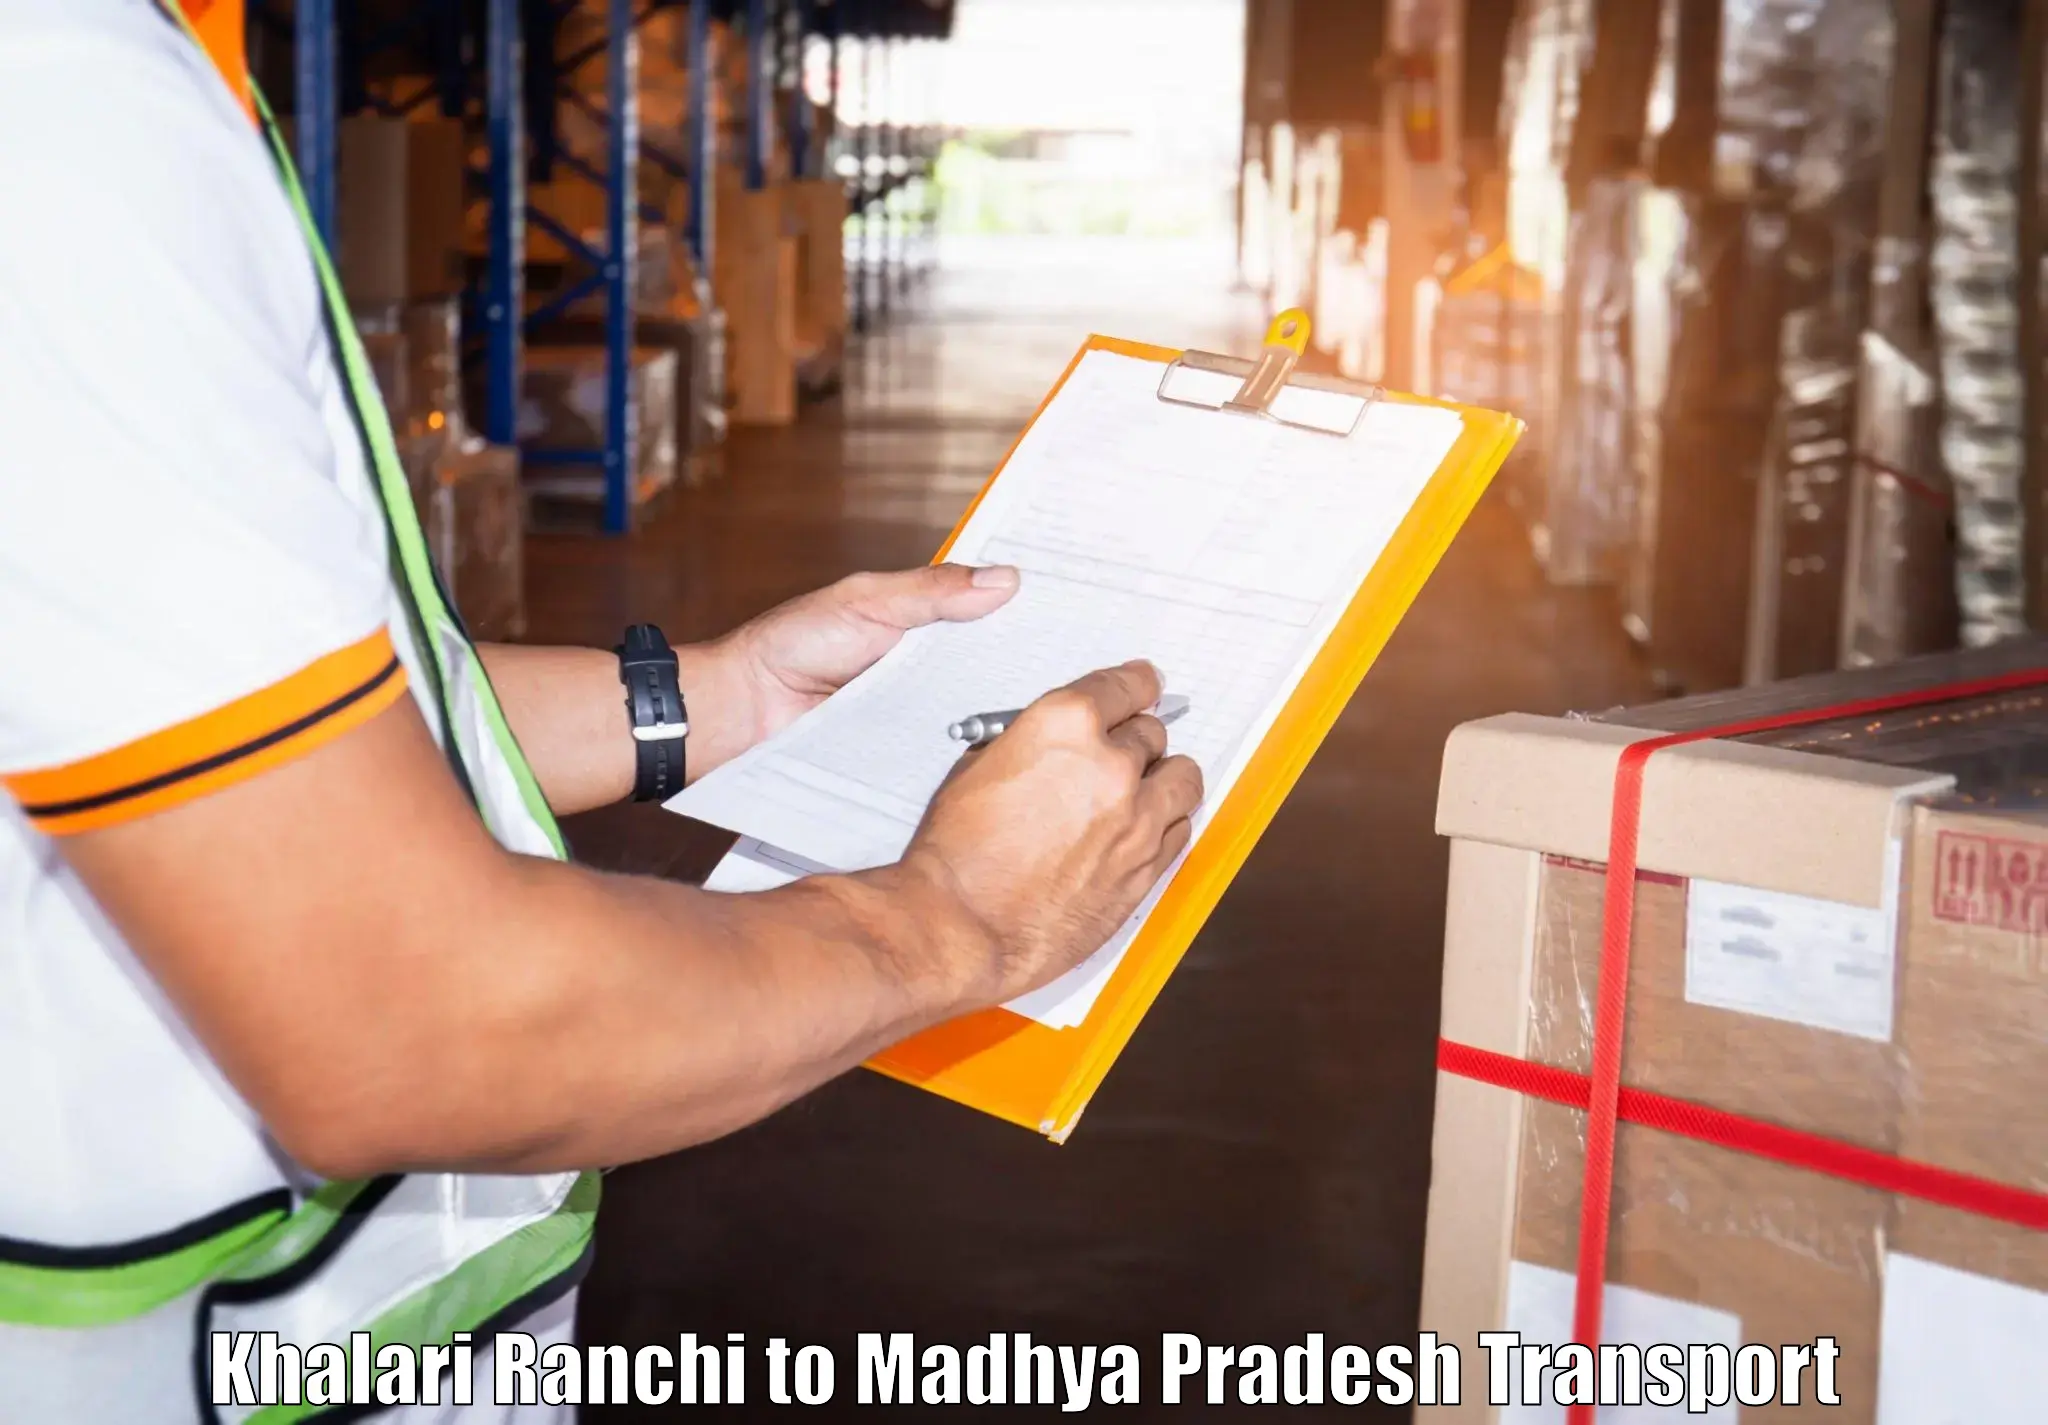 Truck transport companies in India Khalari Ranchi to Madhya Pradesh